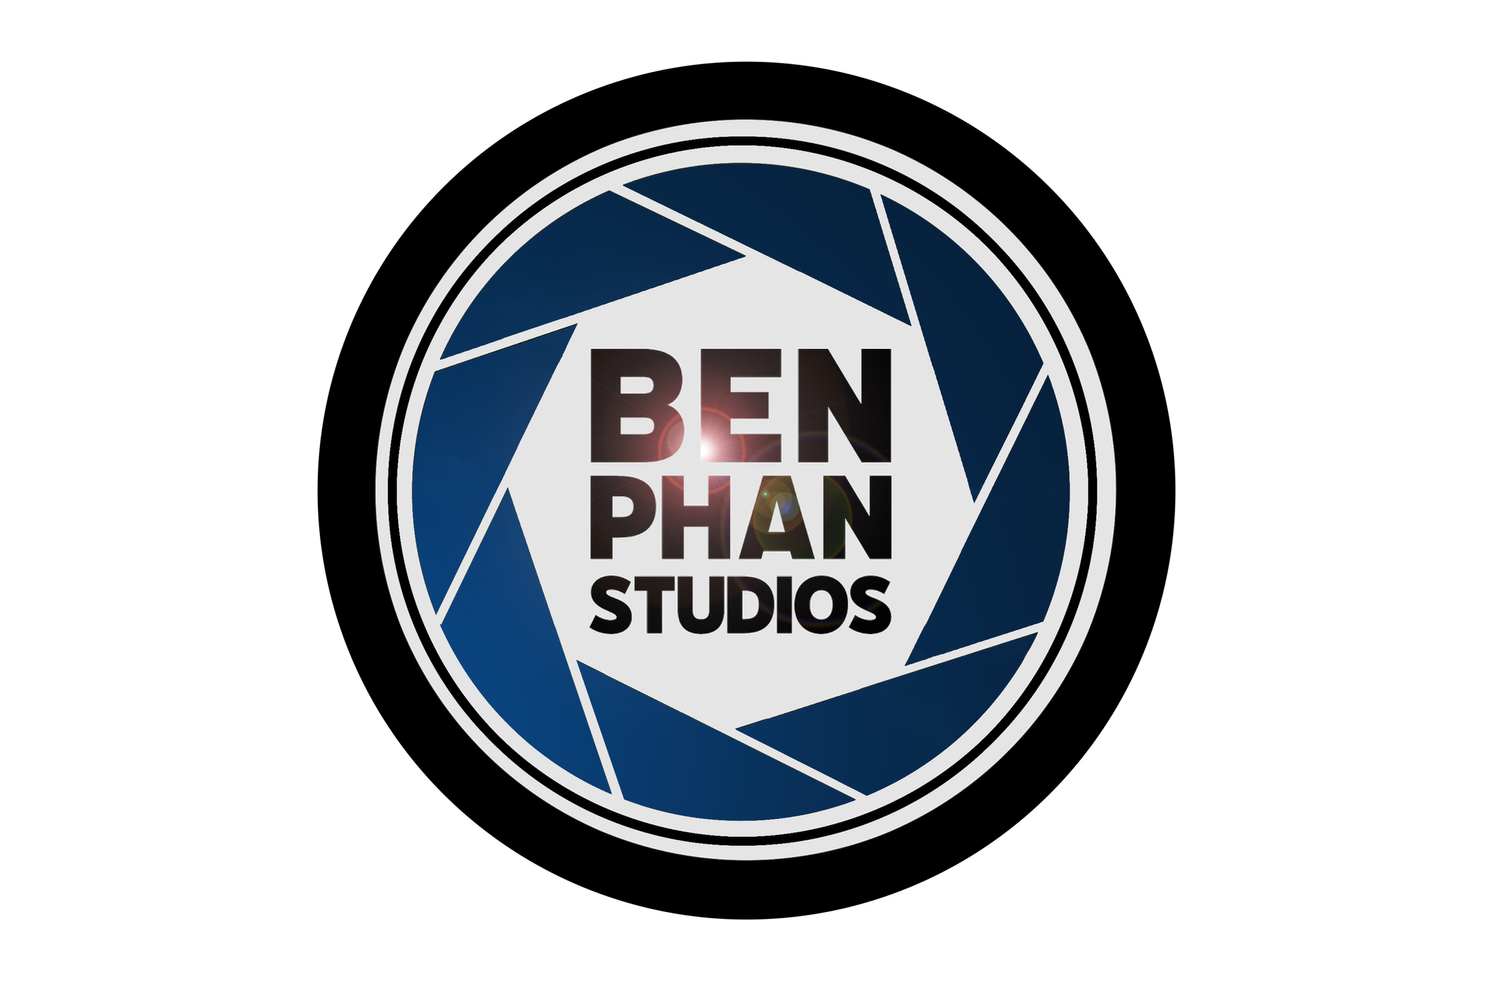 Ben Phan Studios